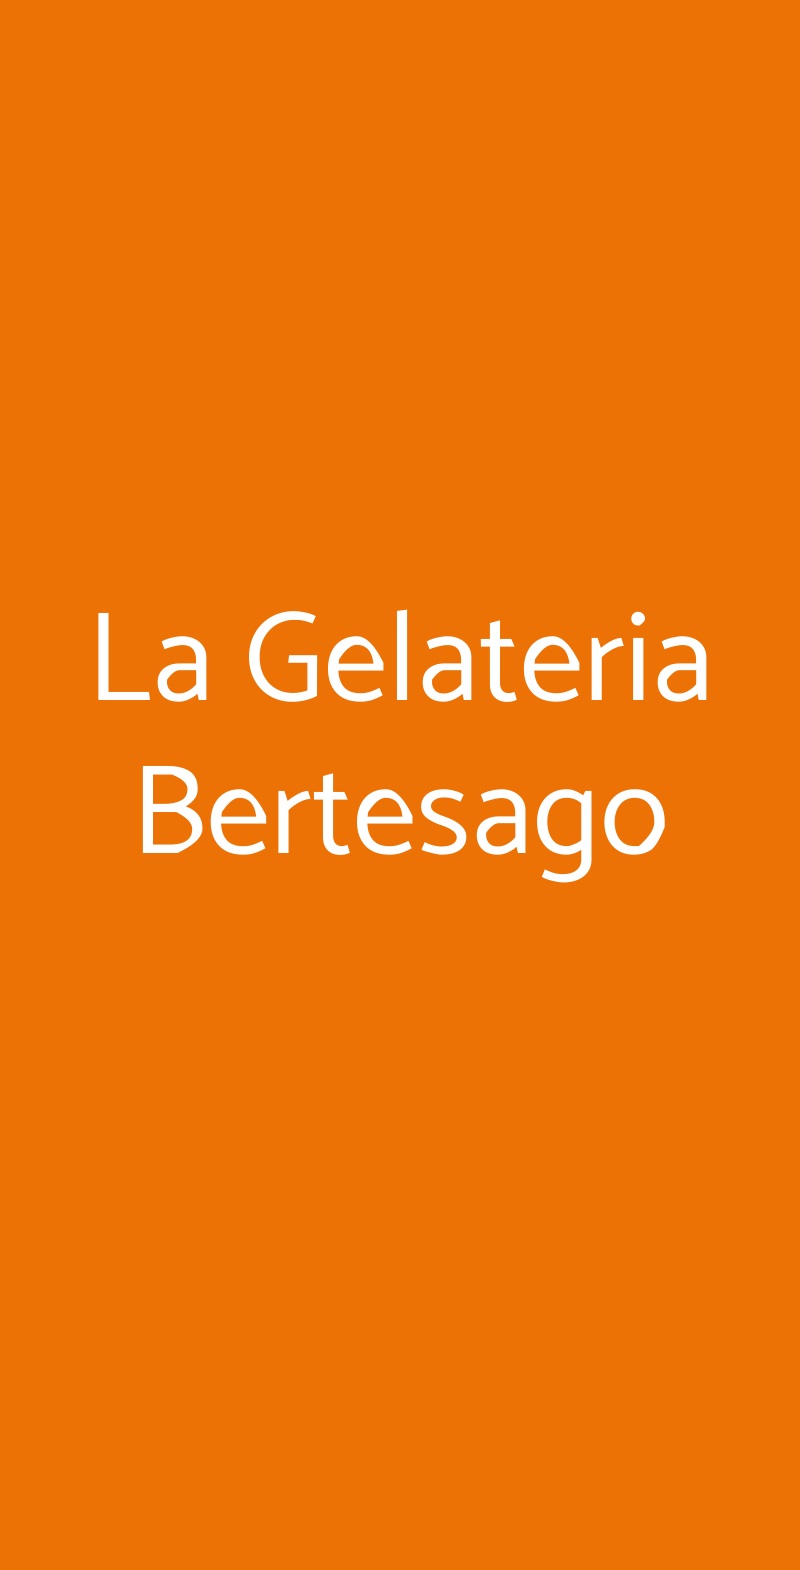 La Gelateria Bertesago Milano menù 1 pagina